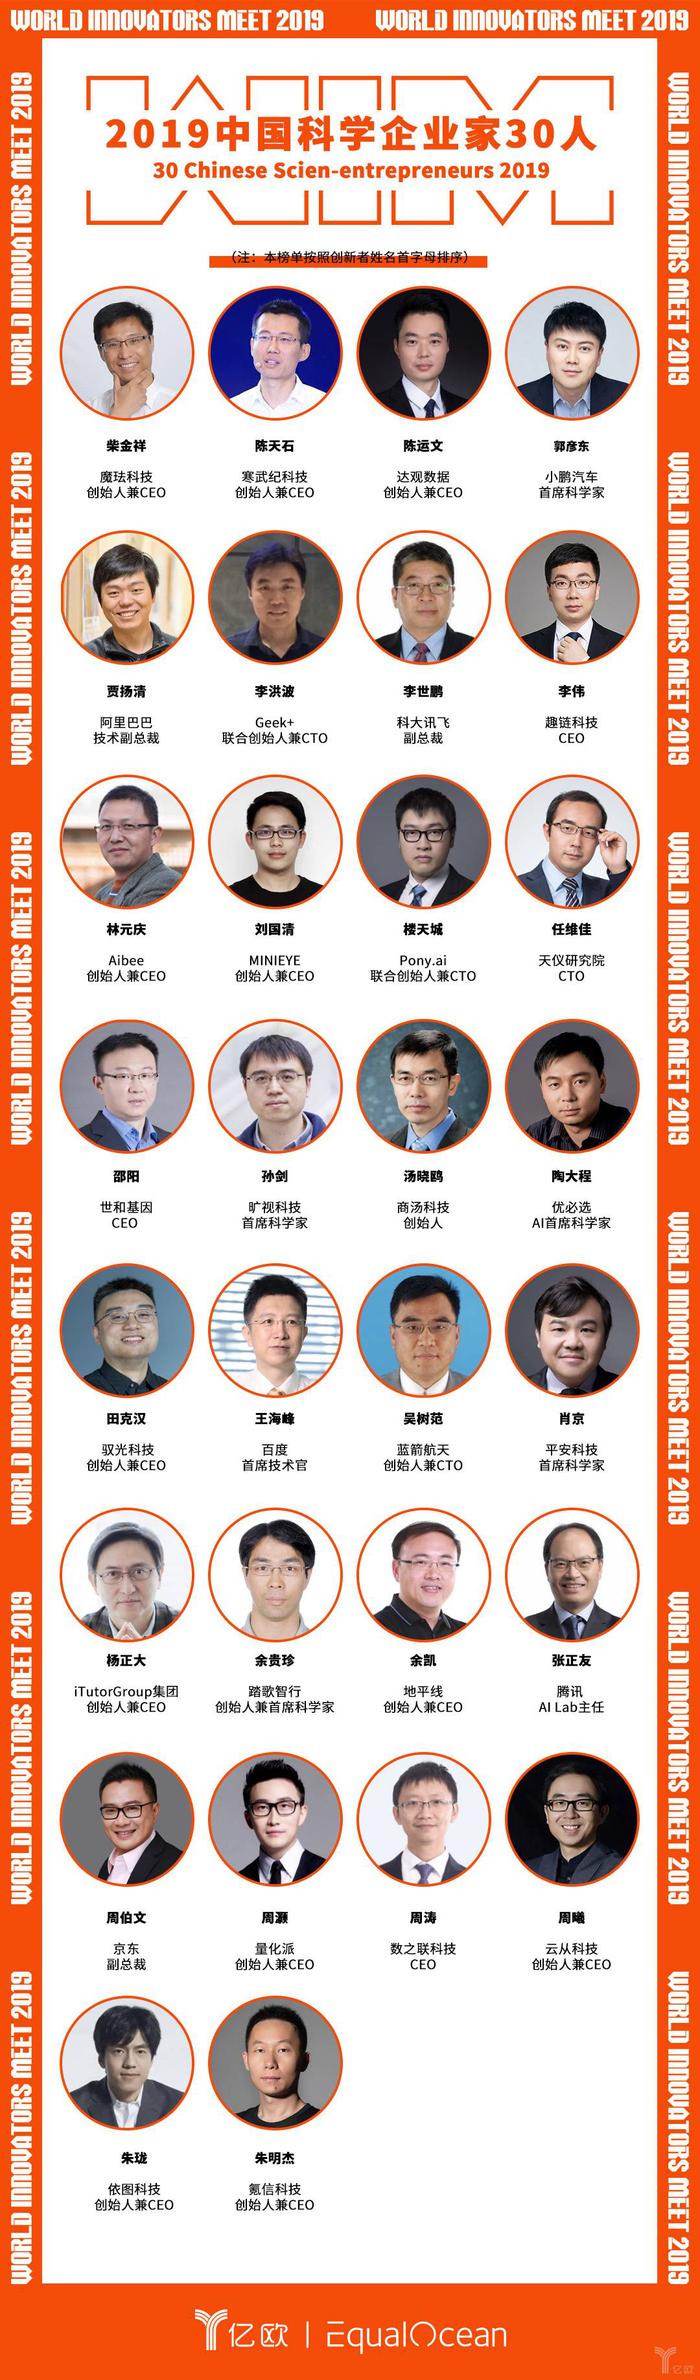 量化派创始人兼CEO周灏入选“2019中国科学企业家30人”